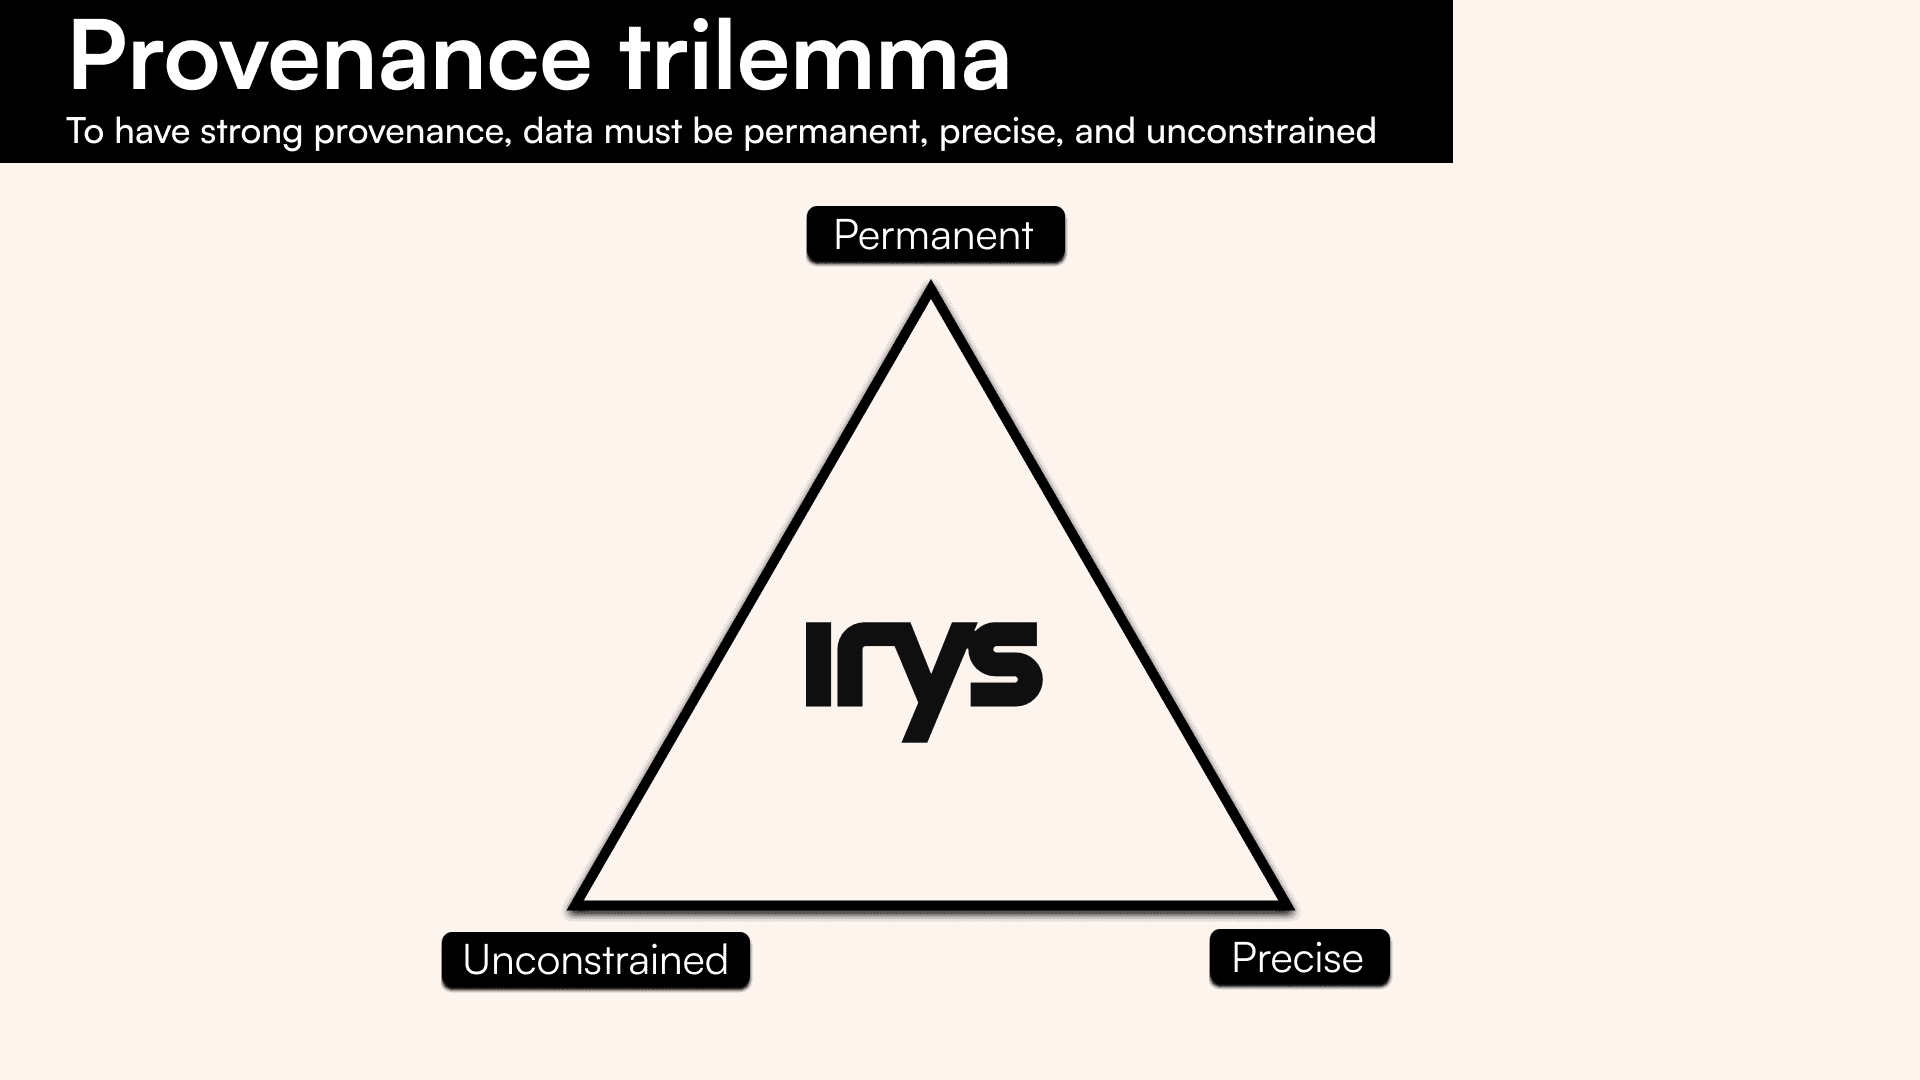 irys-provenance-trilemma.png